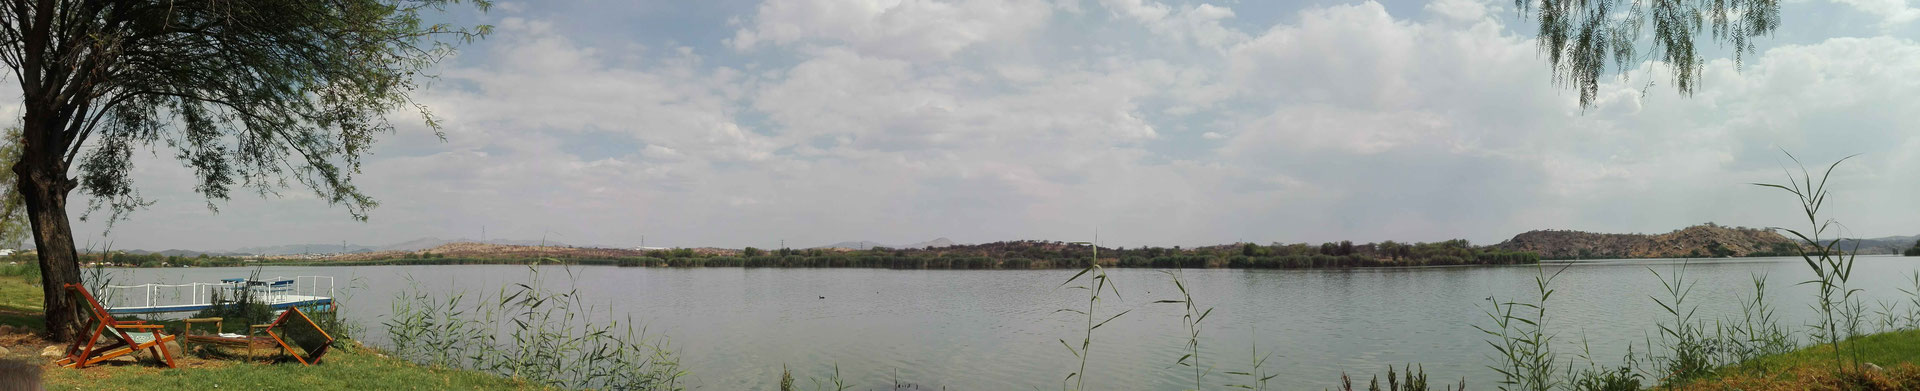 Sicht auf den Goreangab Damm von Penduka aus.